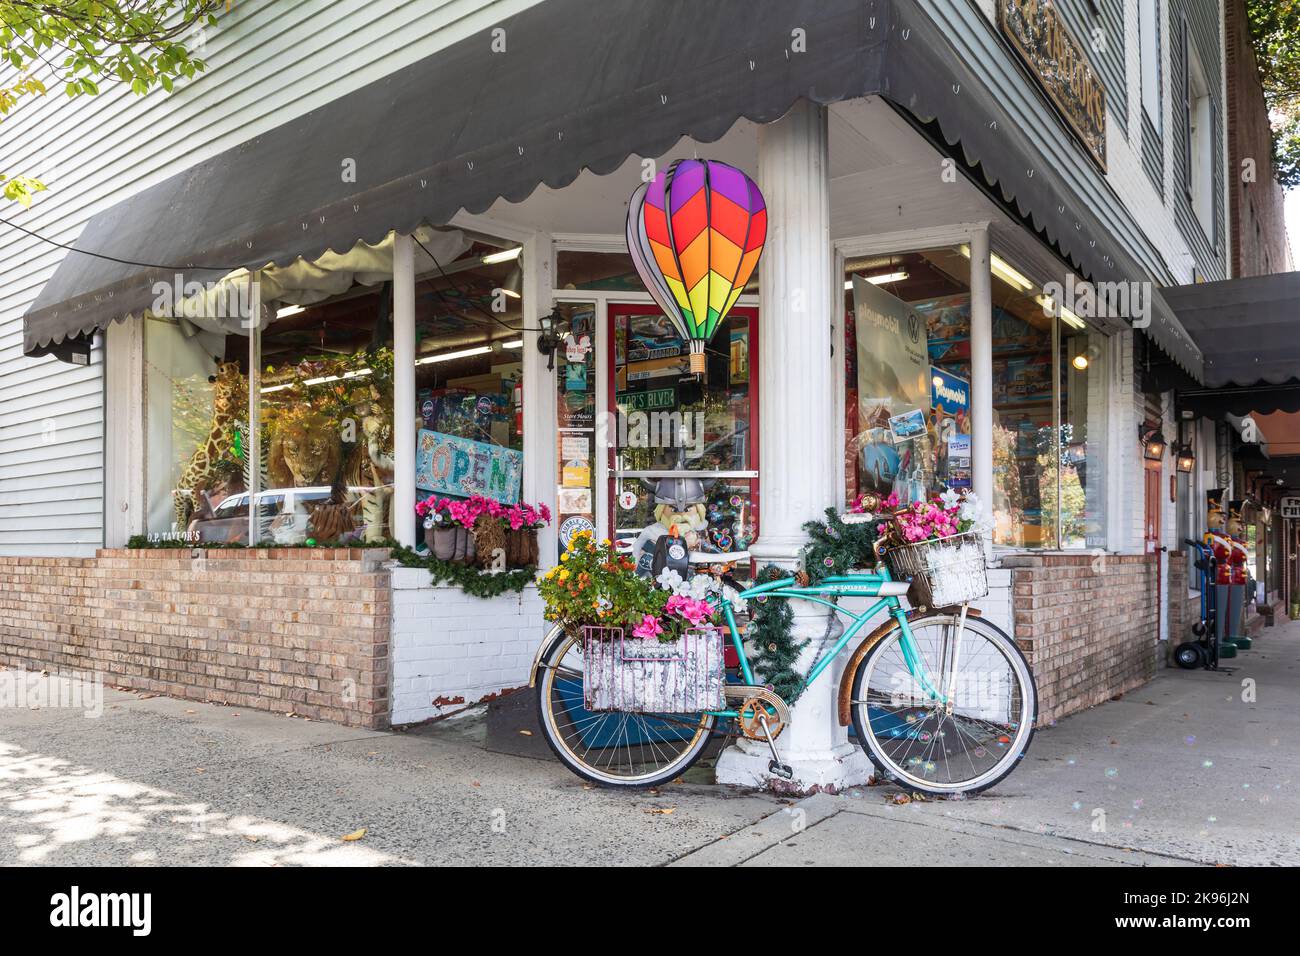 BREVARD, CAROLINA DEL NORTE, EE.UU.-9 OCTUBRE 2022: Tienda de juguetes de O. P. Taylor, mostrando la entrada exterior de la esquina con una bicicleta cubierta de flores en exhibición. Foto de stock